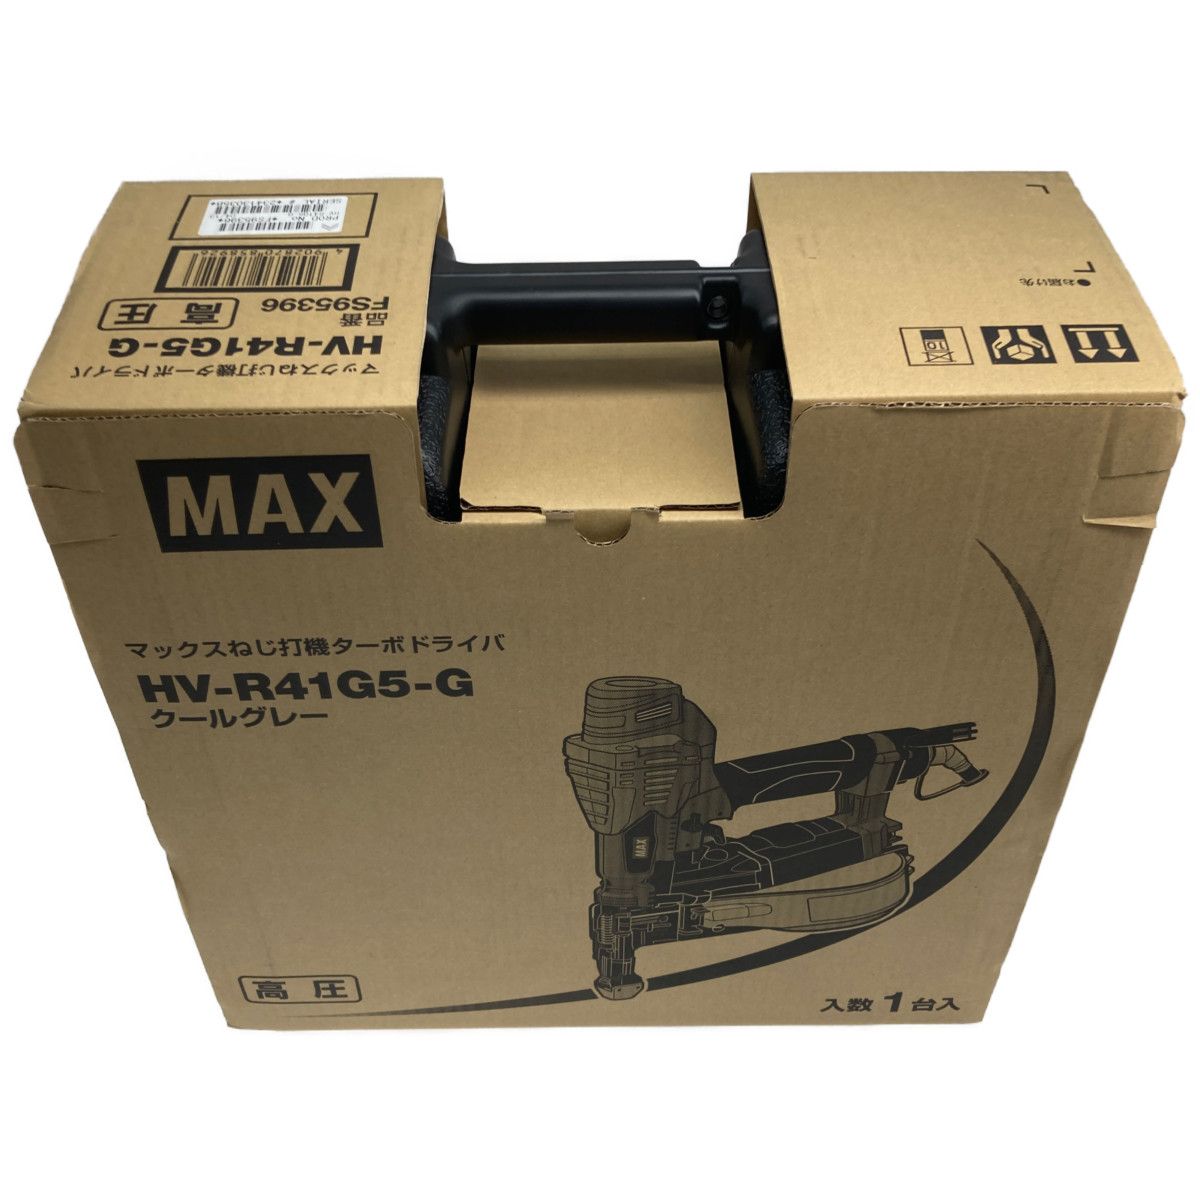 ○○MAX マックス 高圧 ねじ打機 ターボドライバー HV-R41G5-G なんでもリサイクルビッグバンSHOP メルカリ